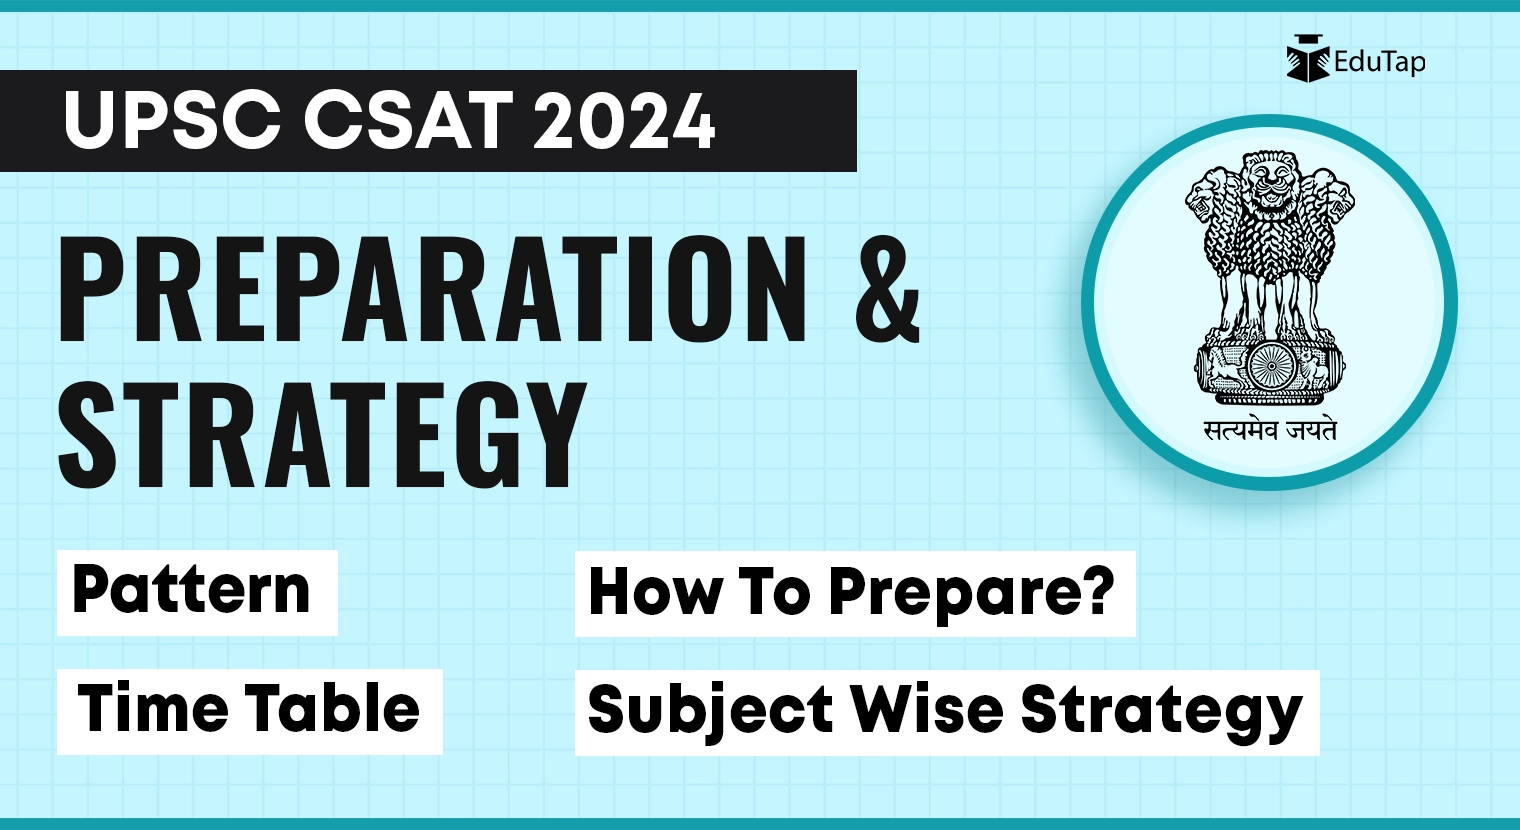 UPSC CSAT Preparation Strategy